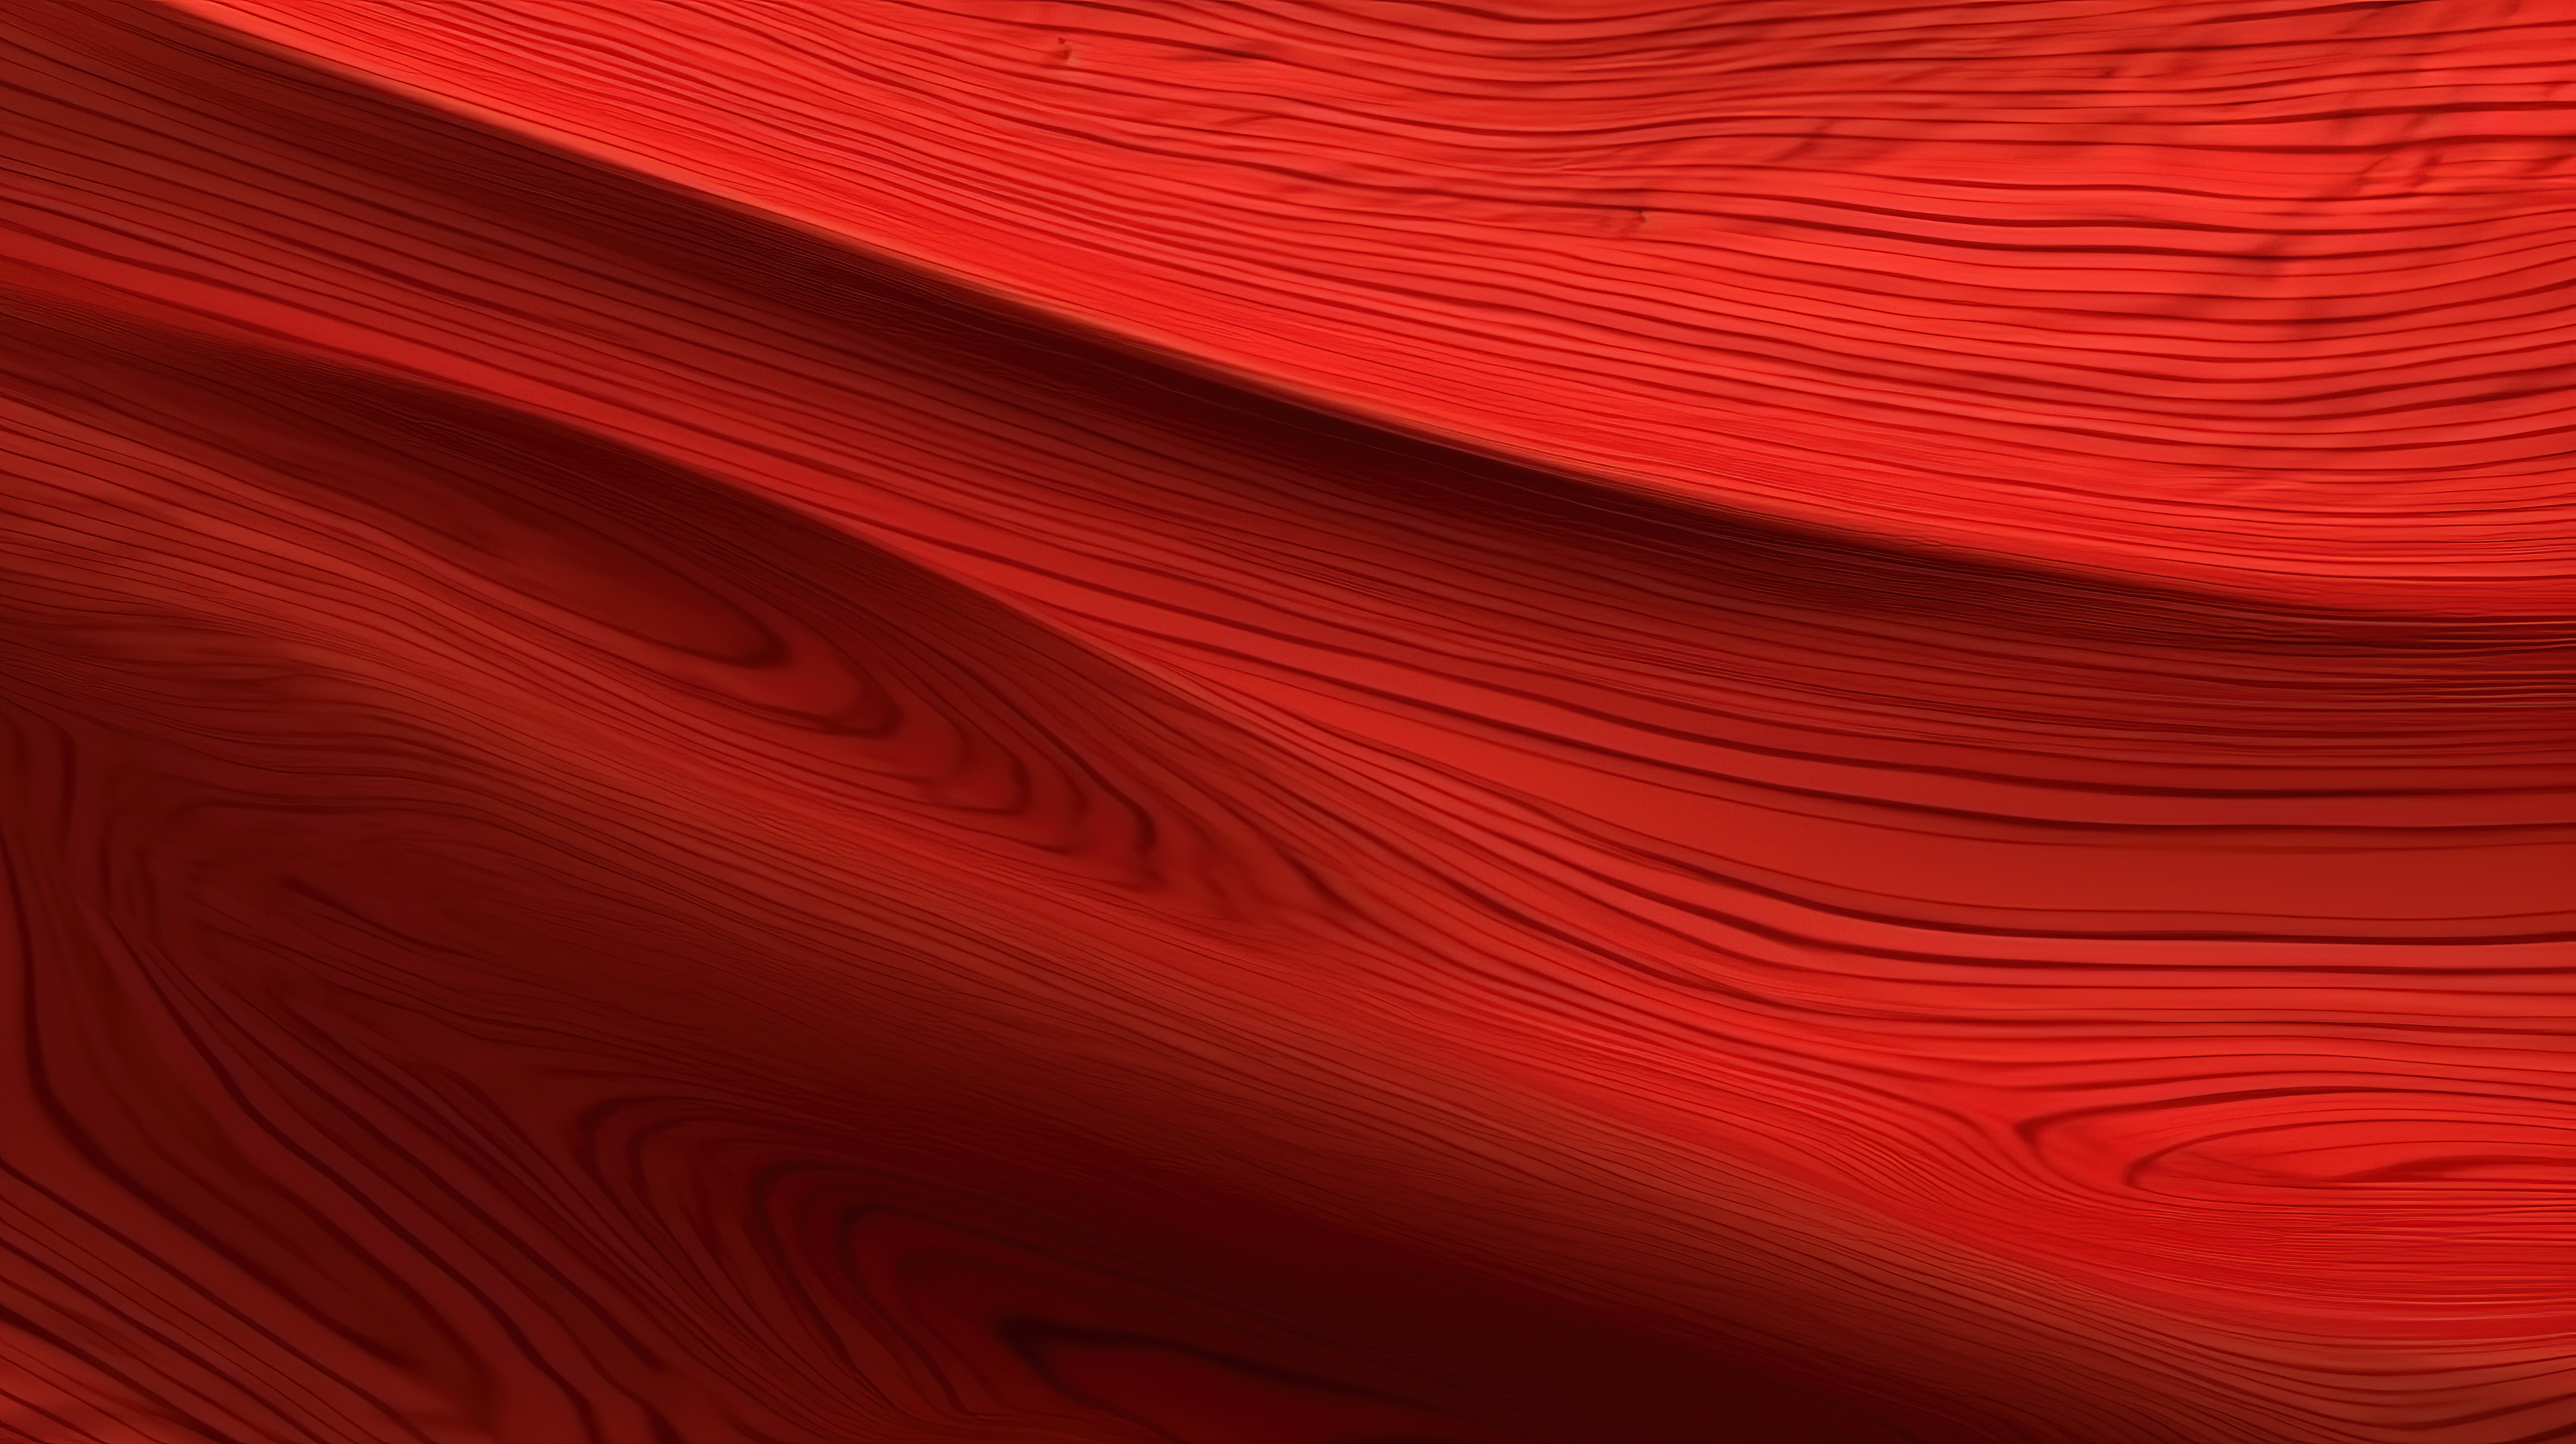 以 3d 呈现的高品质红色弯曲木材纹理图片